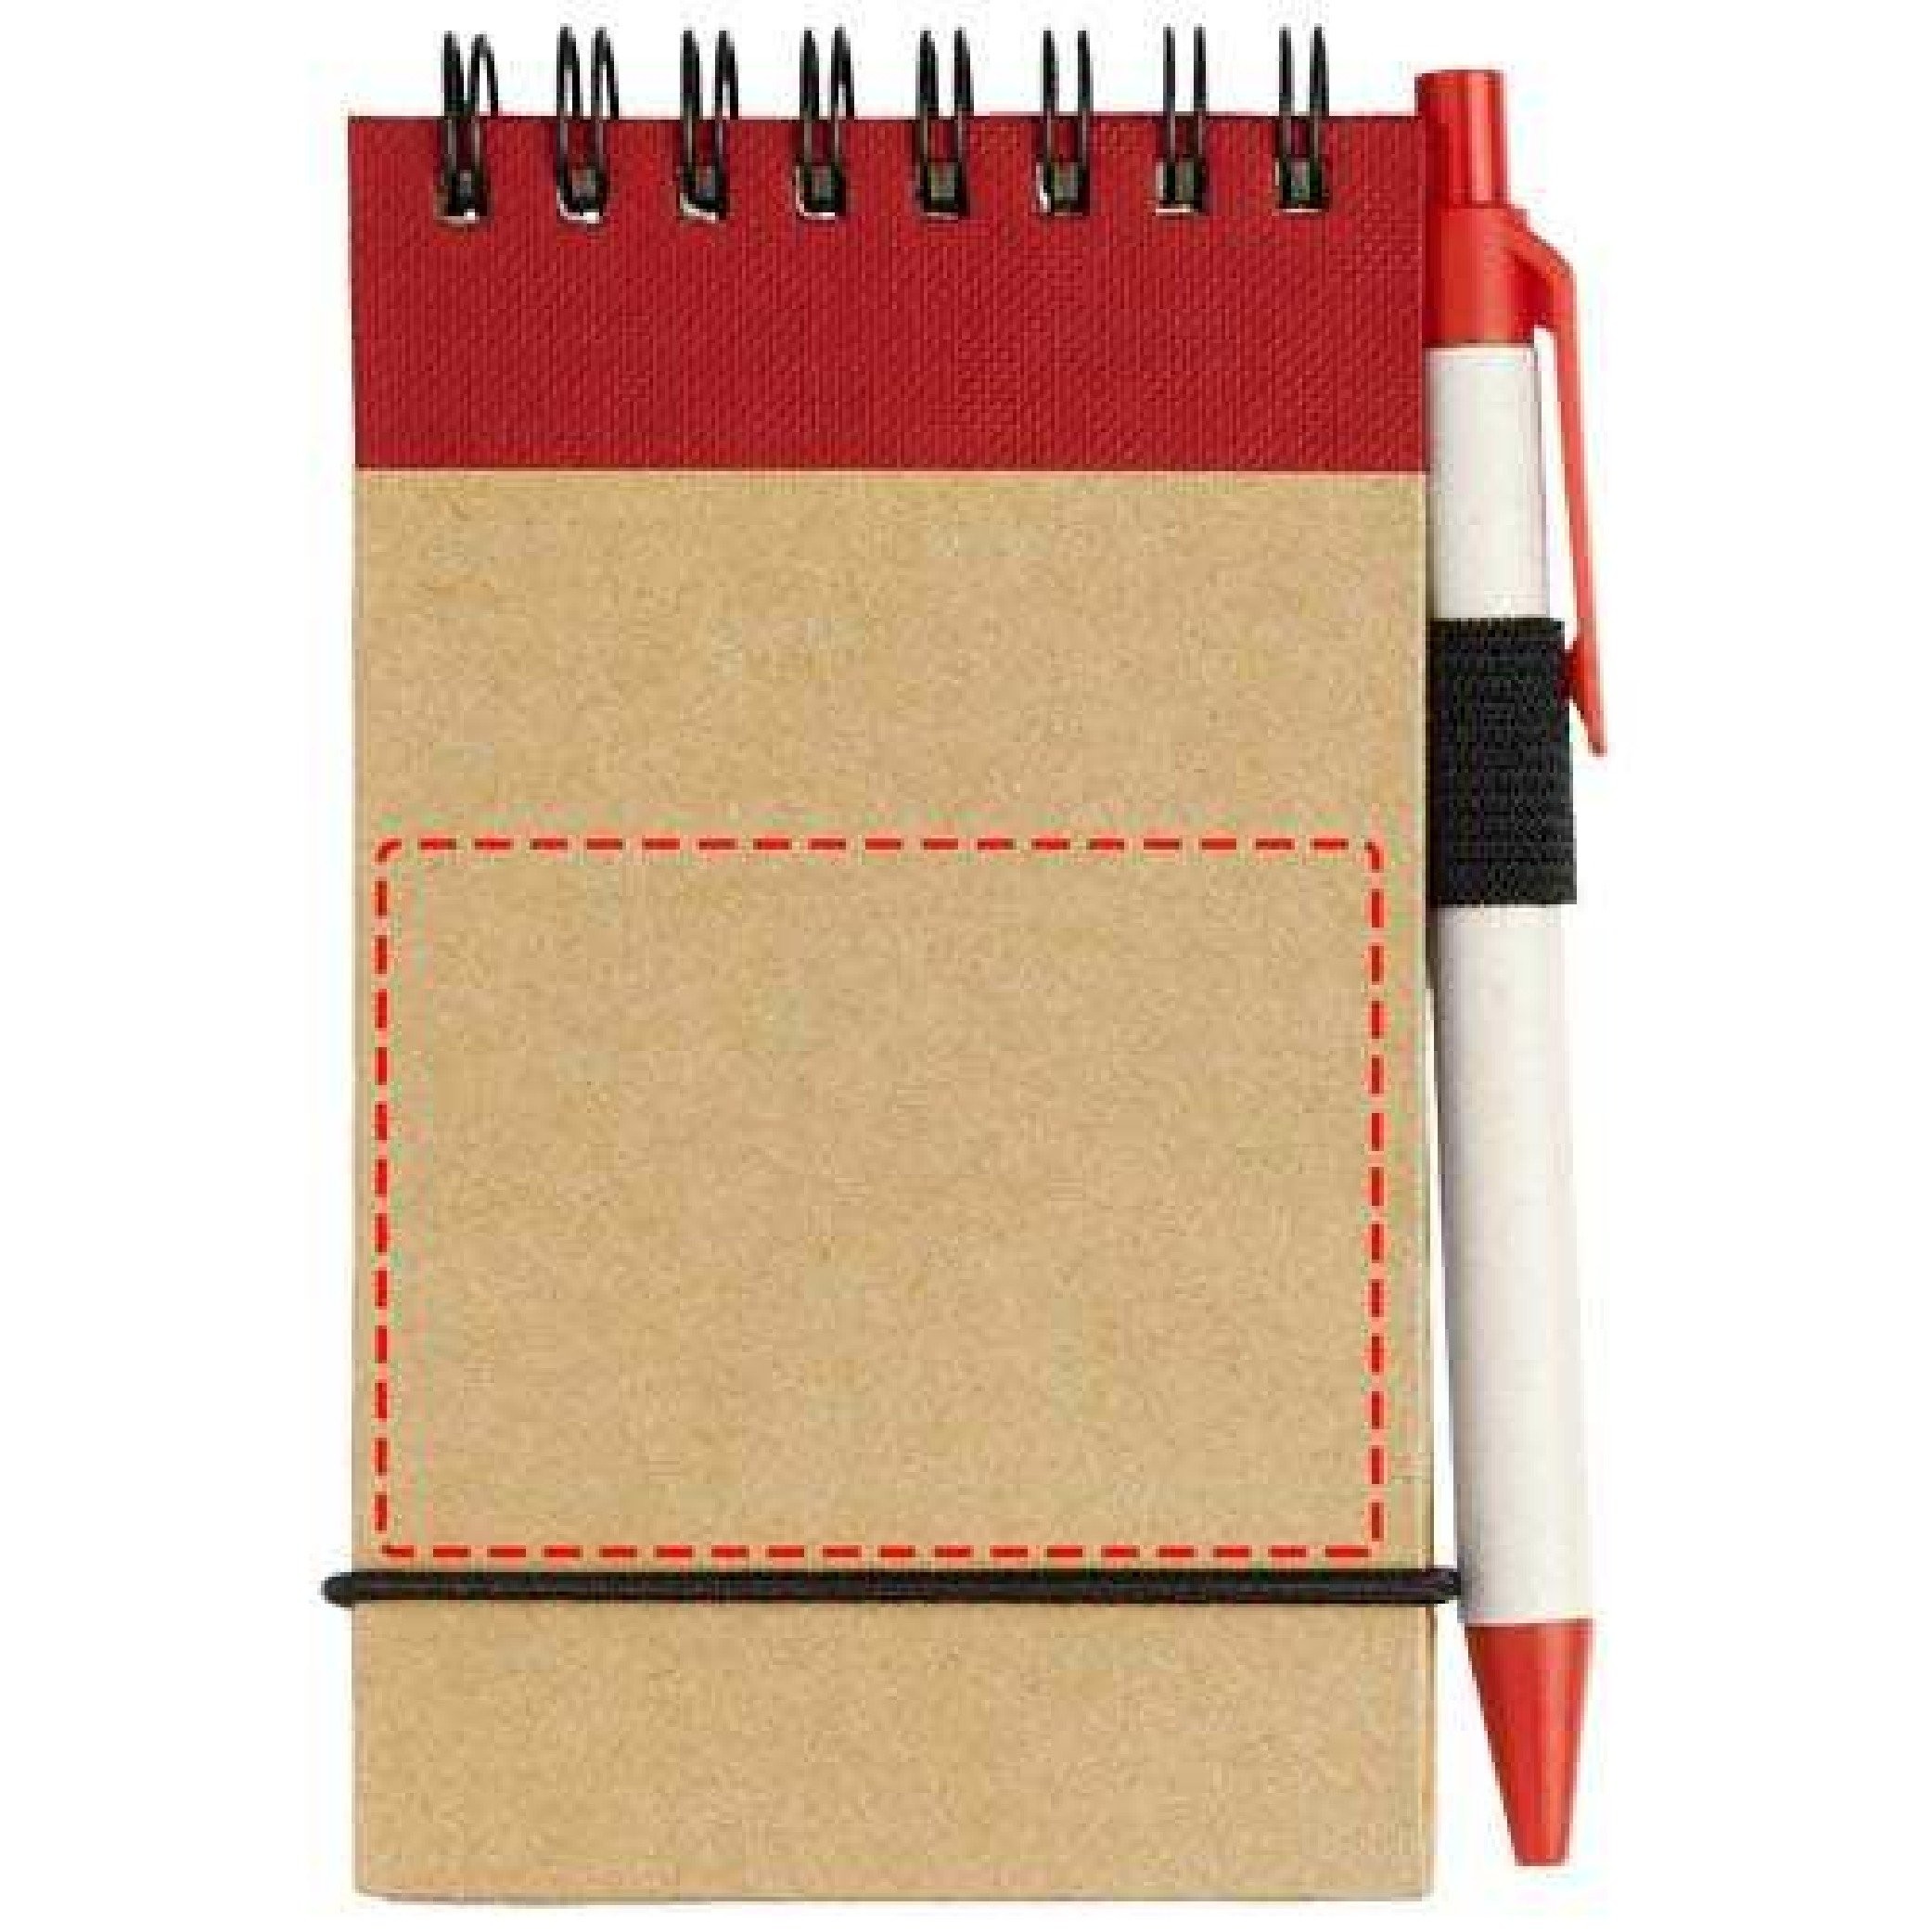 Картинки блокнотиков. Блокнот с ручкой. Дети. Блокнот. Блокнот записная книжка. Красный блокнот и ручка.